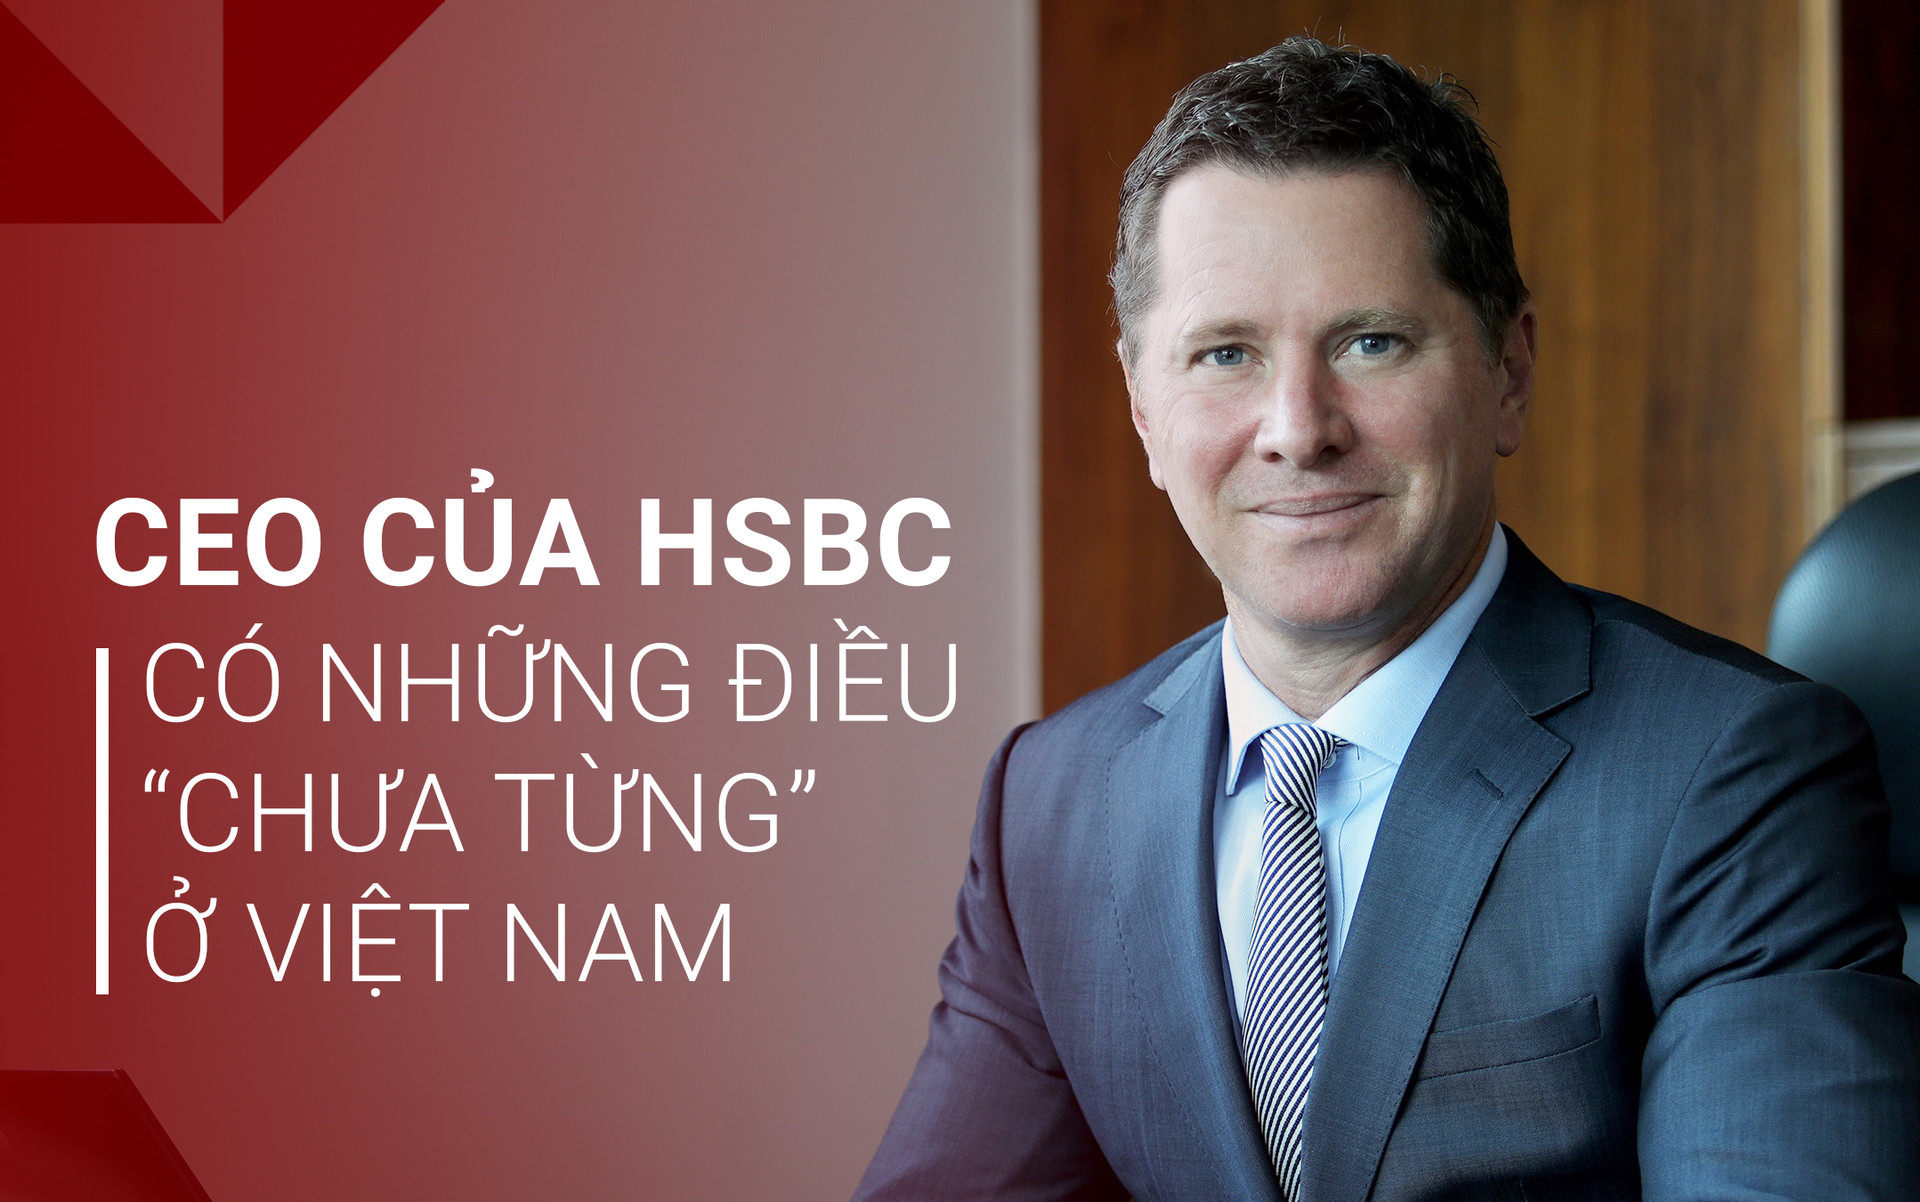 Sếp ngân hàng ngoại hoạt động 150 năm ở Việt Nam: “Đã đi vòng quanh thế giới nhưng tôi có những trải nghiệm gần như không tưởng ở Việt Nam!” - Ảnh 1.